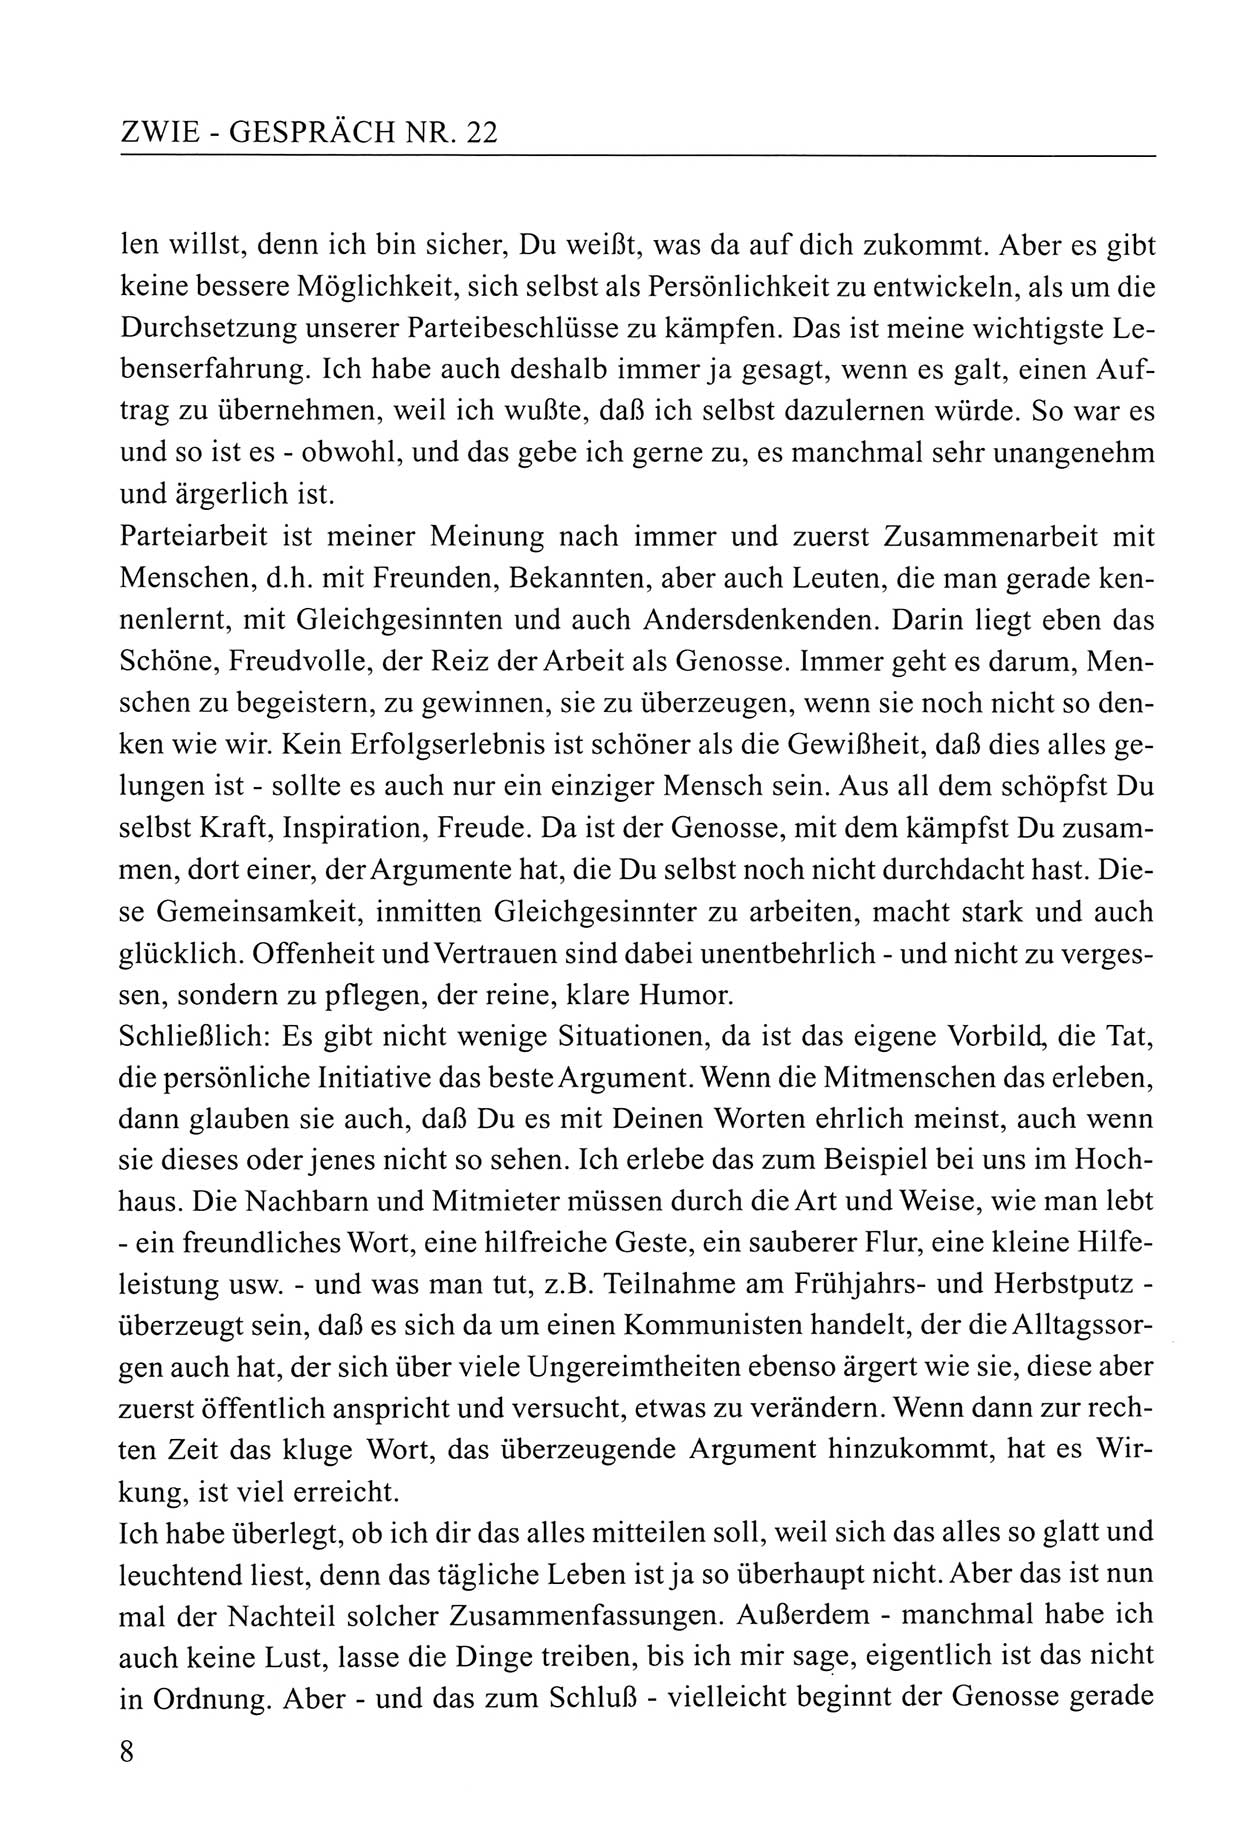 Zwie-Gespräch, Beiträge zum Umgang mit der Staatssicherheits-Vergangenheit [Deutsche Demokratische Republik (DDR)], Ausgabe Nr. 22, Berlin 1994, Seite 8 (Zwie-Gespr. Ausg. 22 1994, S. 8)